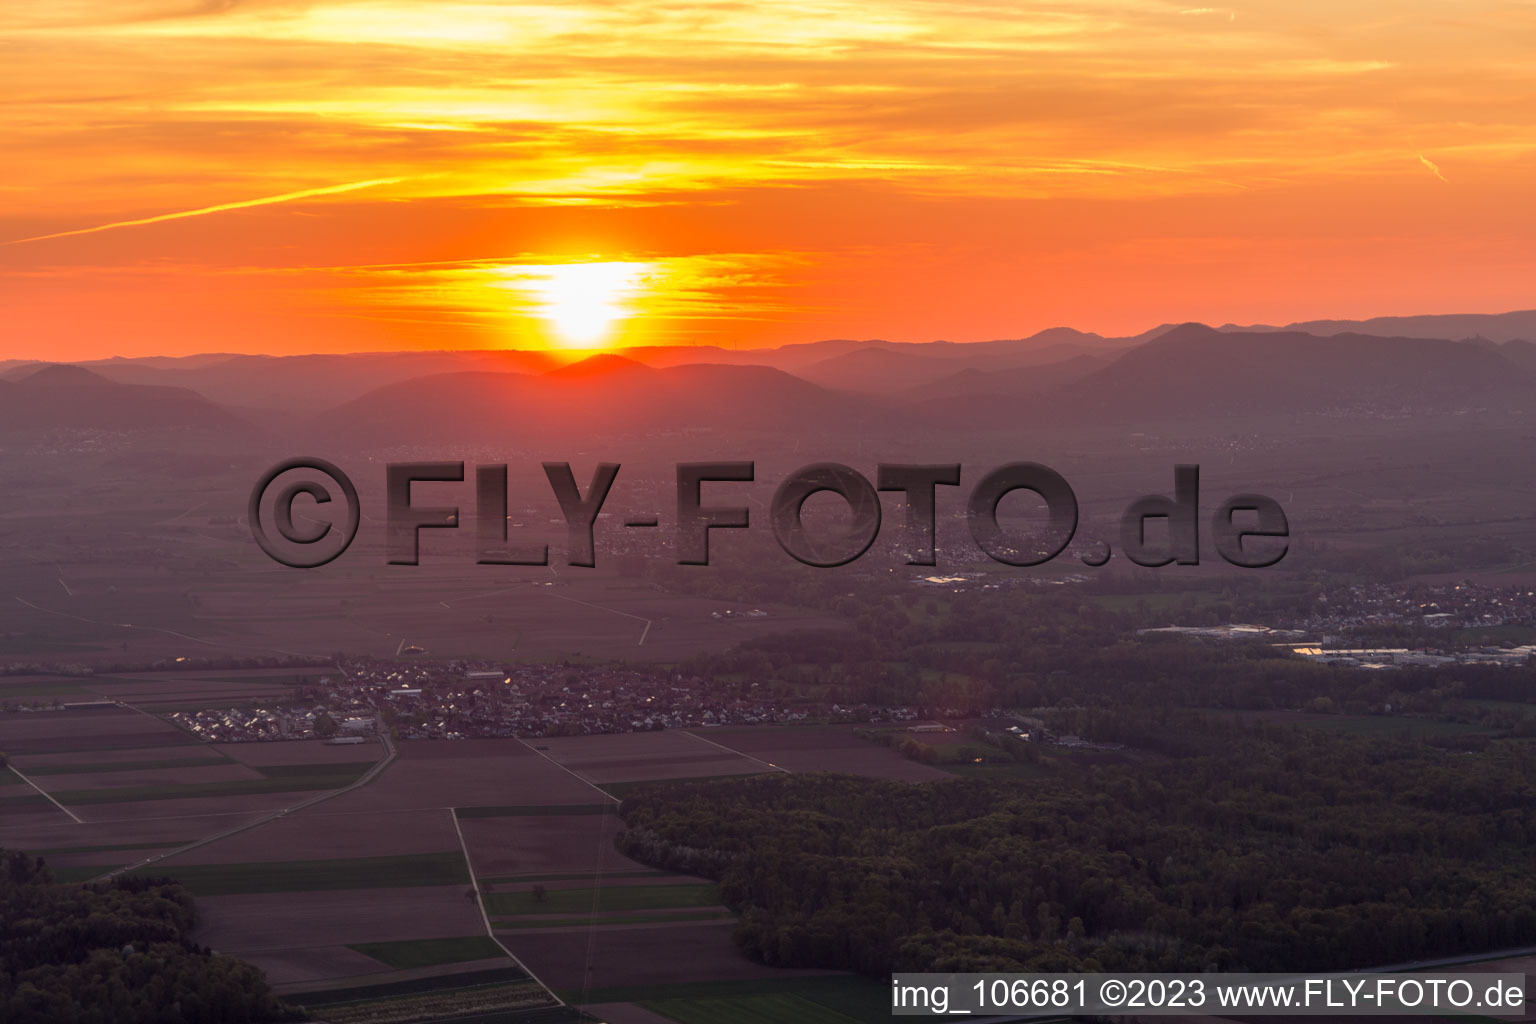 Vue aérienne de Steinweiler dans le département Rhénanie-Palatinat, Allemagne